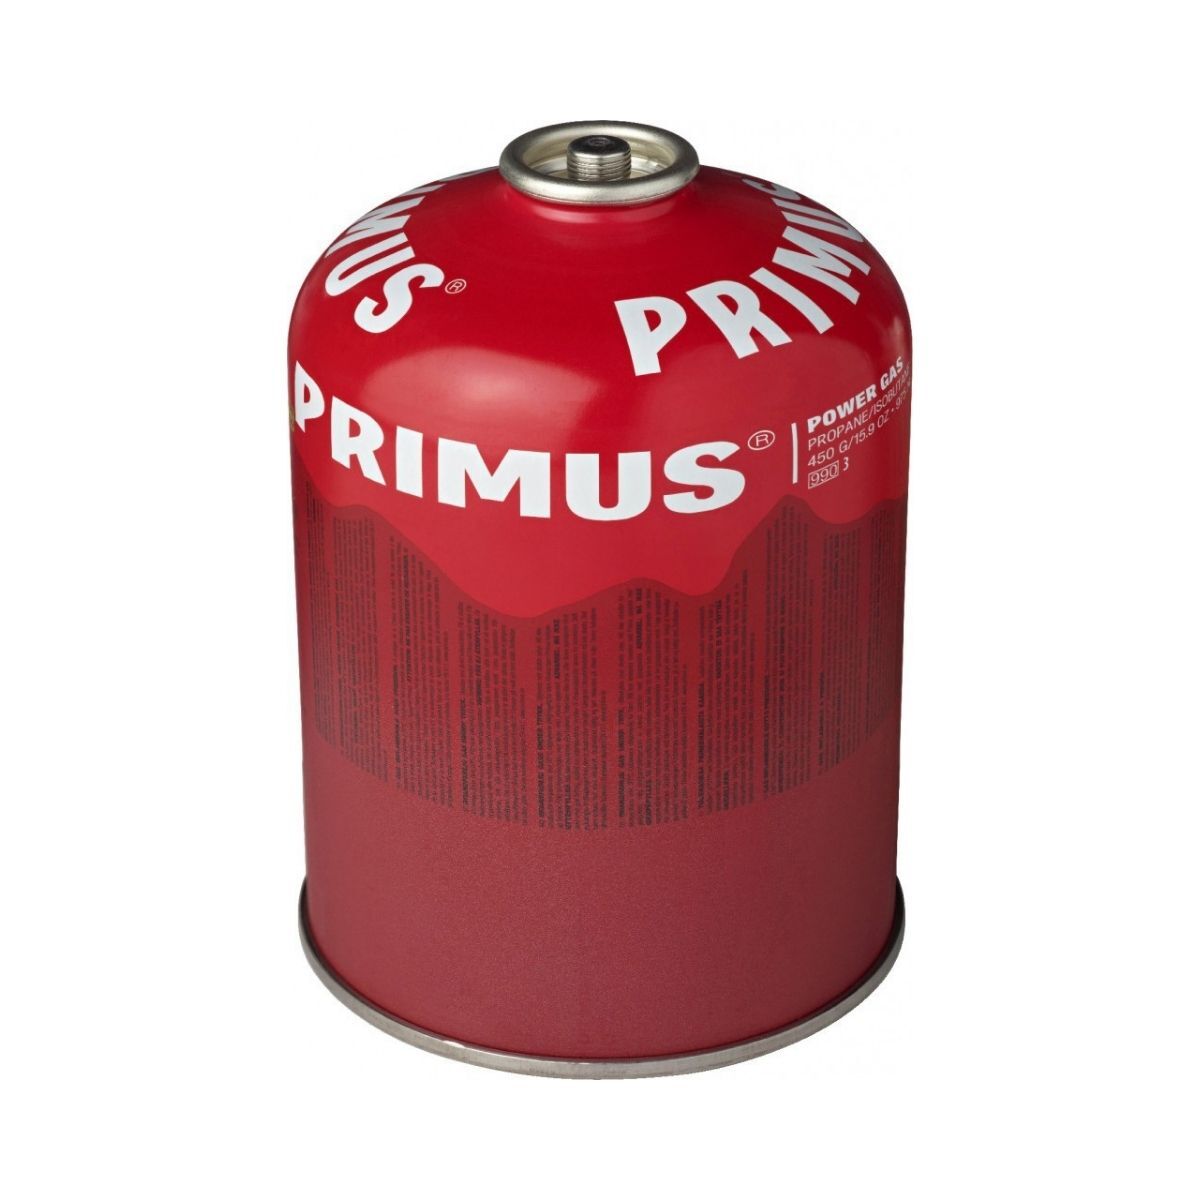 Primus Power Gas 450 g L2 - Gaskartusche